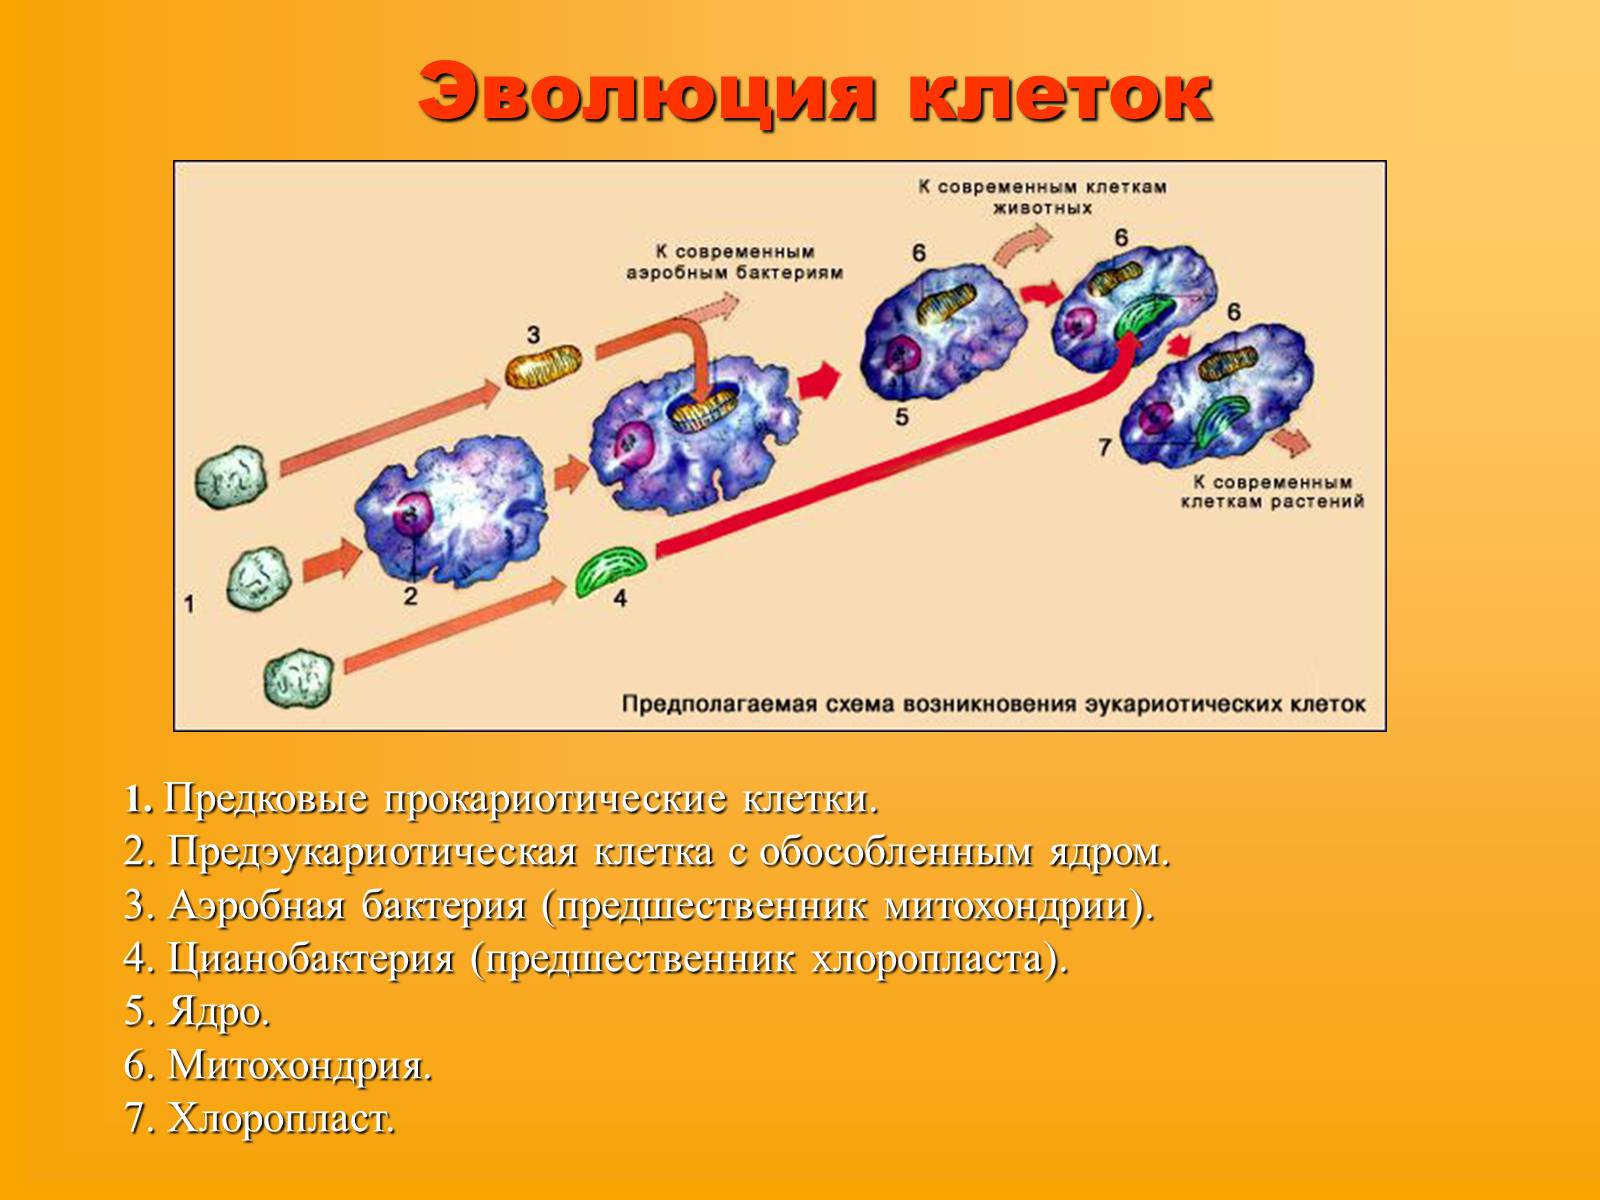 Как произошла 1 клетка. Эволюция эукариотической клетки. Схема эволюции эукариотических клеток. Эволюция клеток возникновение эукариот схема. Какие основные этапы эволюции клетки эукариот.